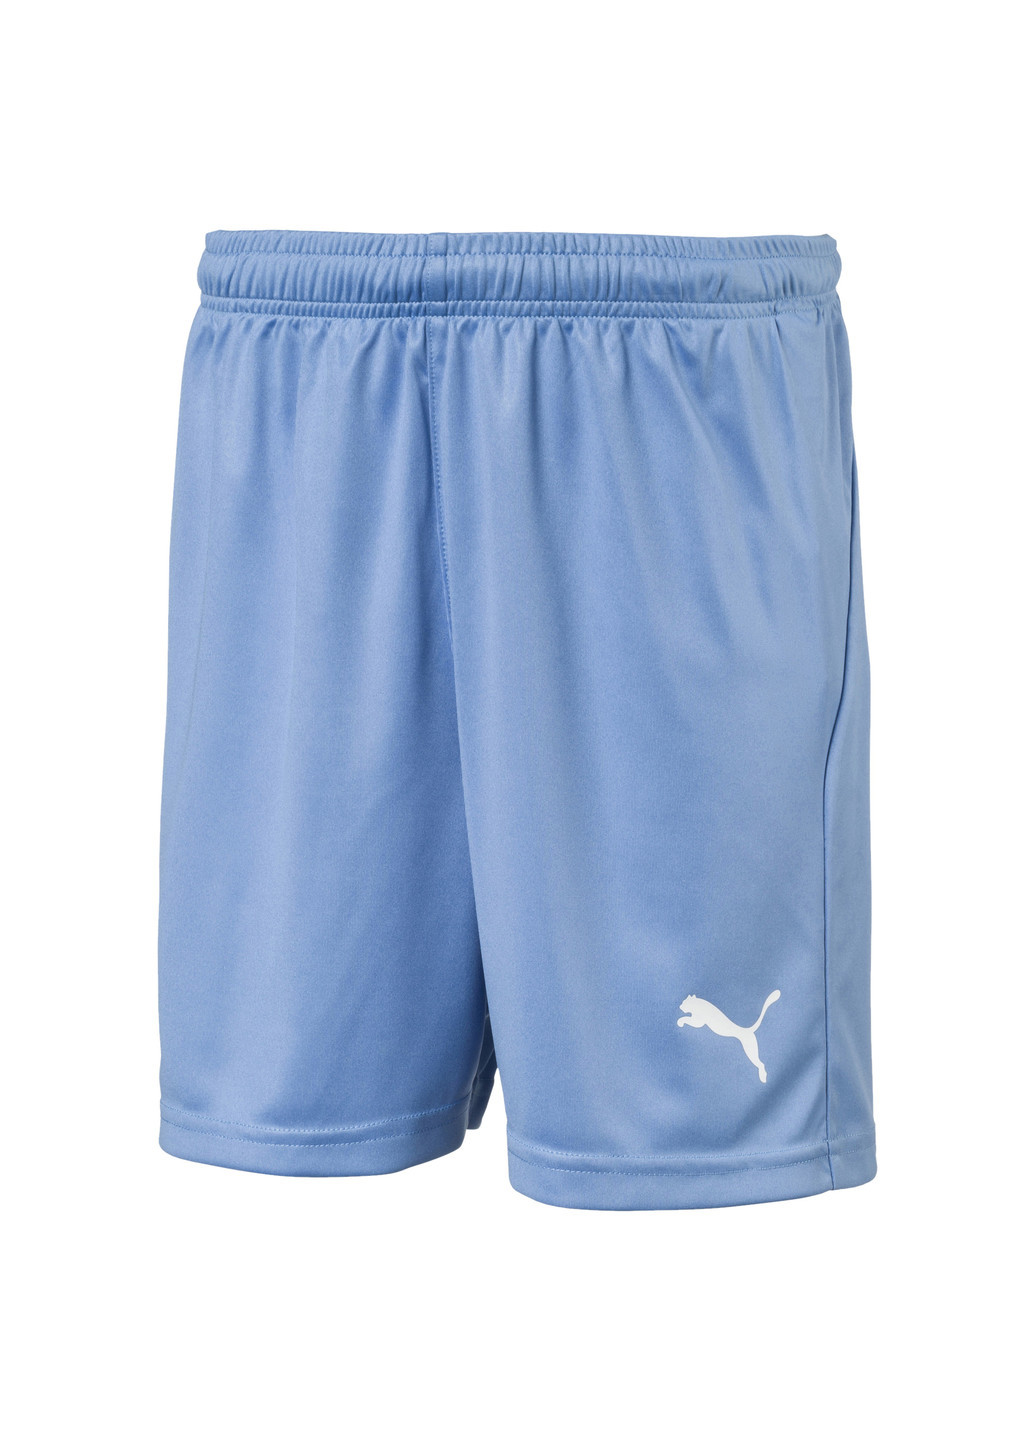 Шорты LIGA Kids’ Football Shorts Puma однотонные синие спортивные полиэстер